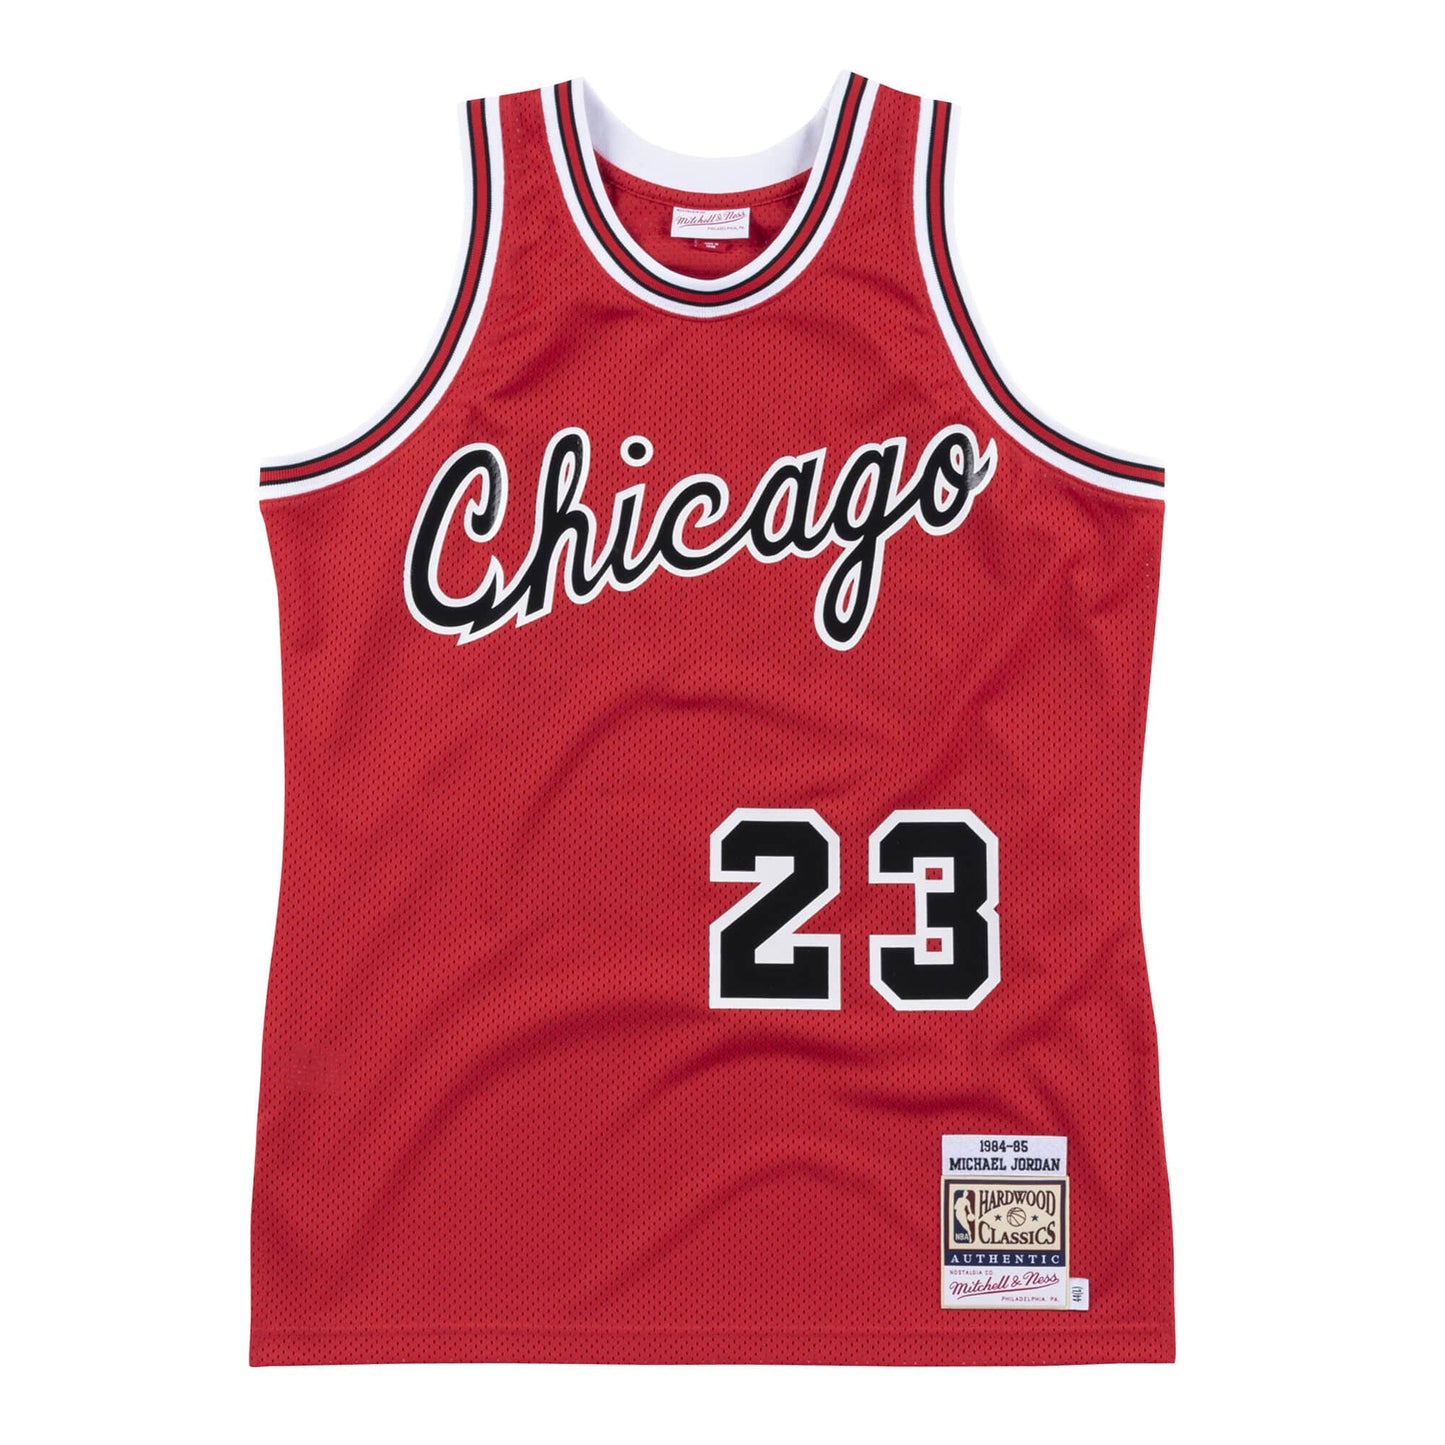 Authentic Jersey Chicago Bulls 1984-85 Michael Jordans